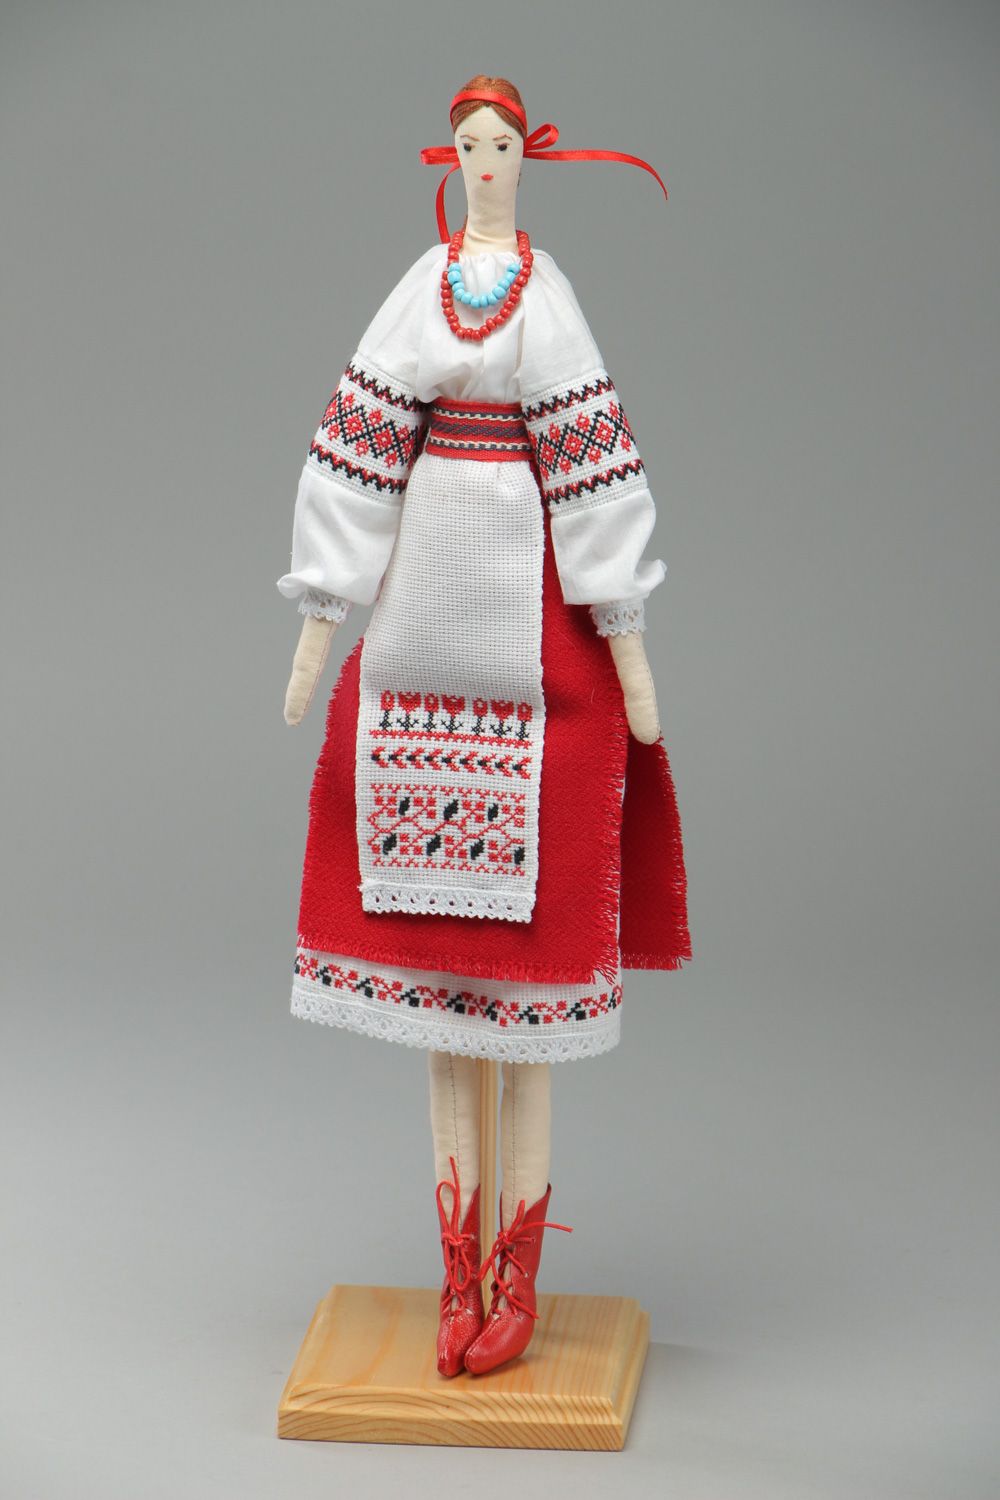 Кукла ручной работы в национальном костюме декоративная большая тряпичная  фото 1